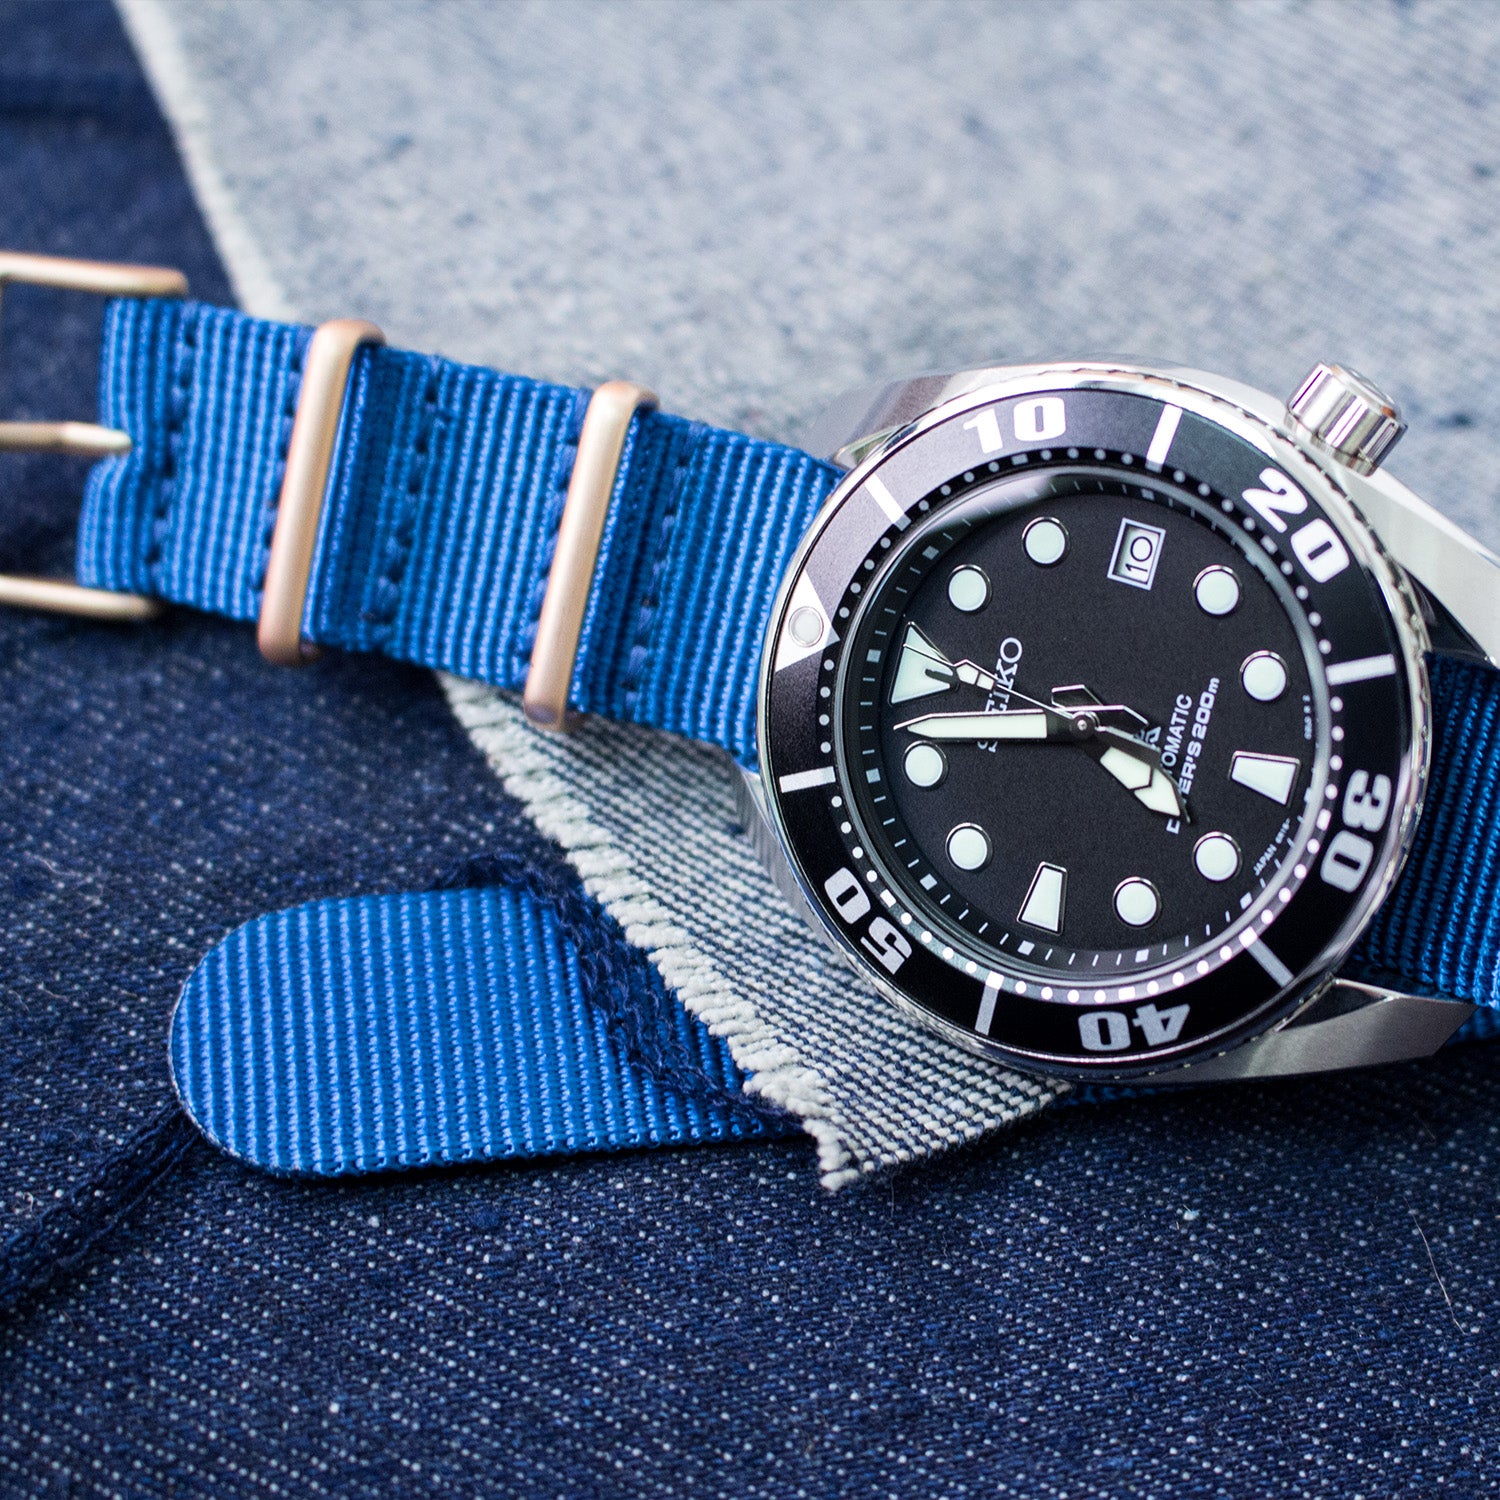 Seiko Sumo SBDC031 Prospex Diver Automatic NATO watch strap by Strapcode